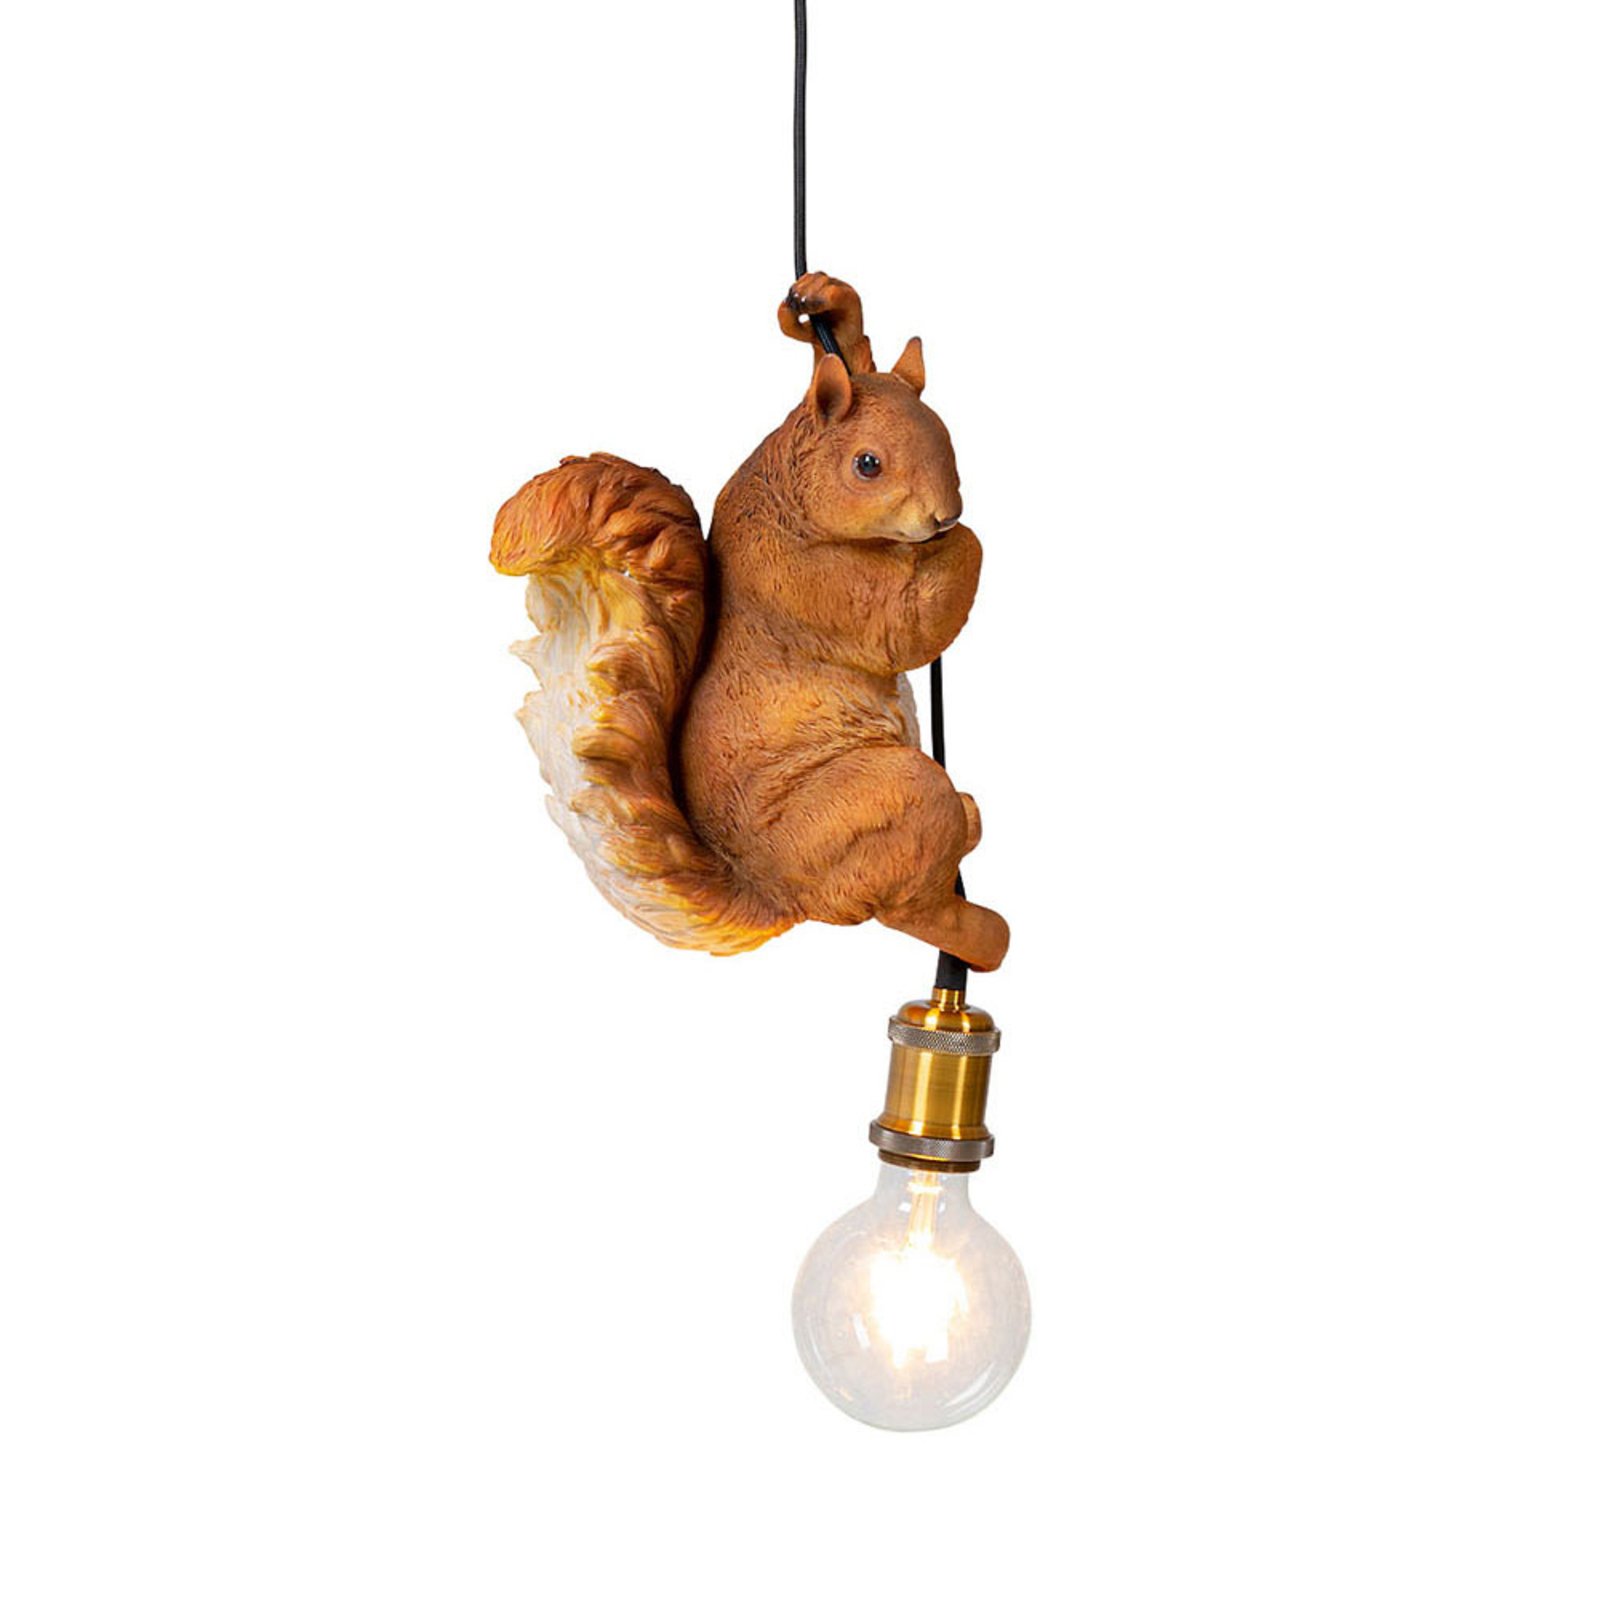 Kare Hanglamp met eekhoorn model